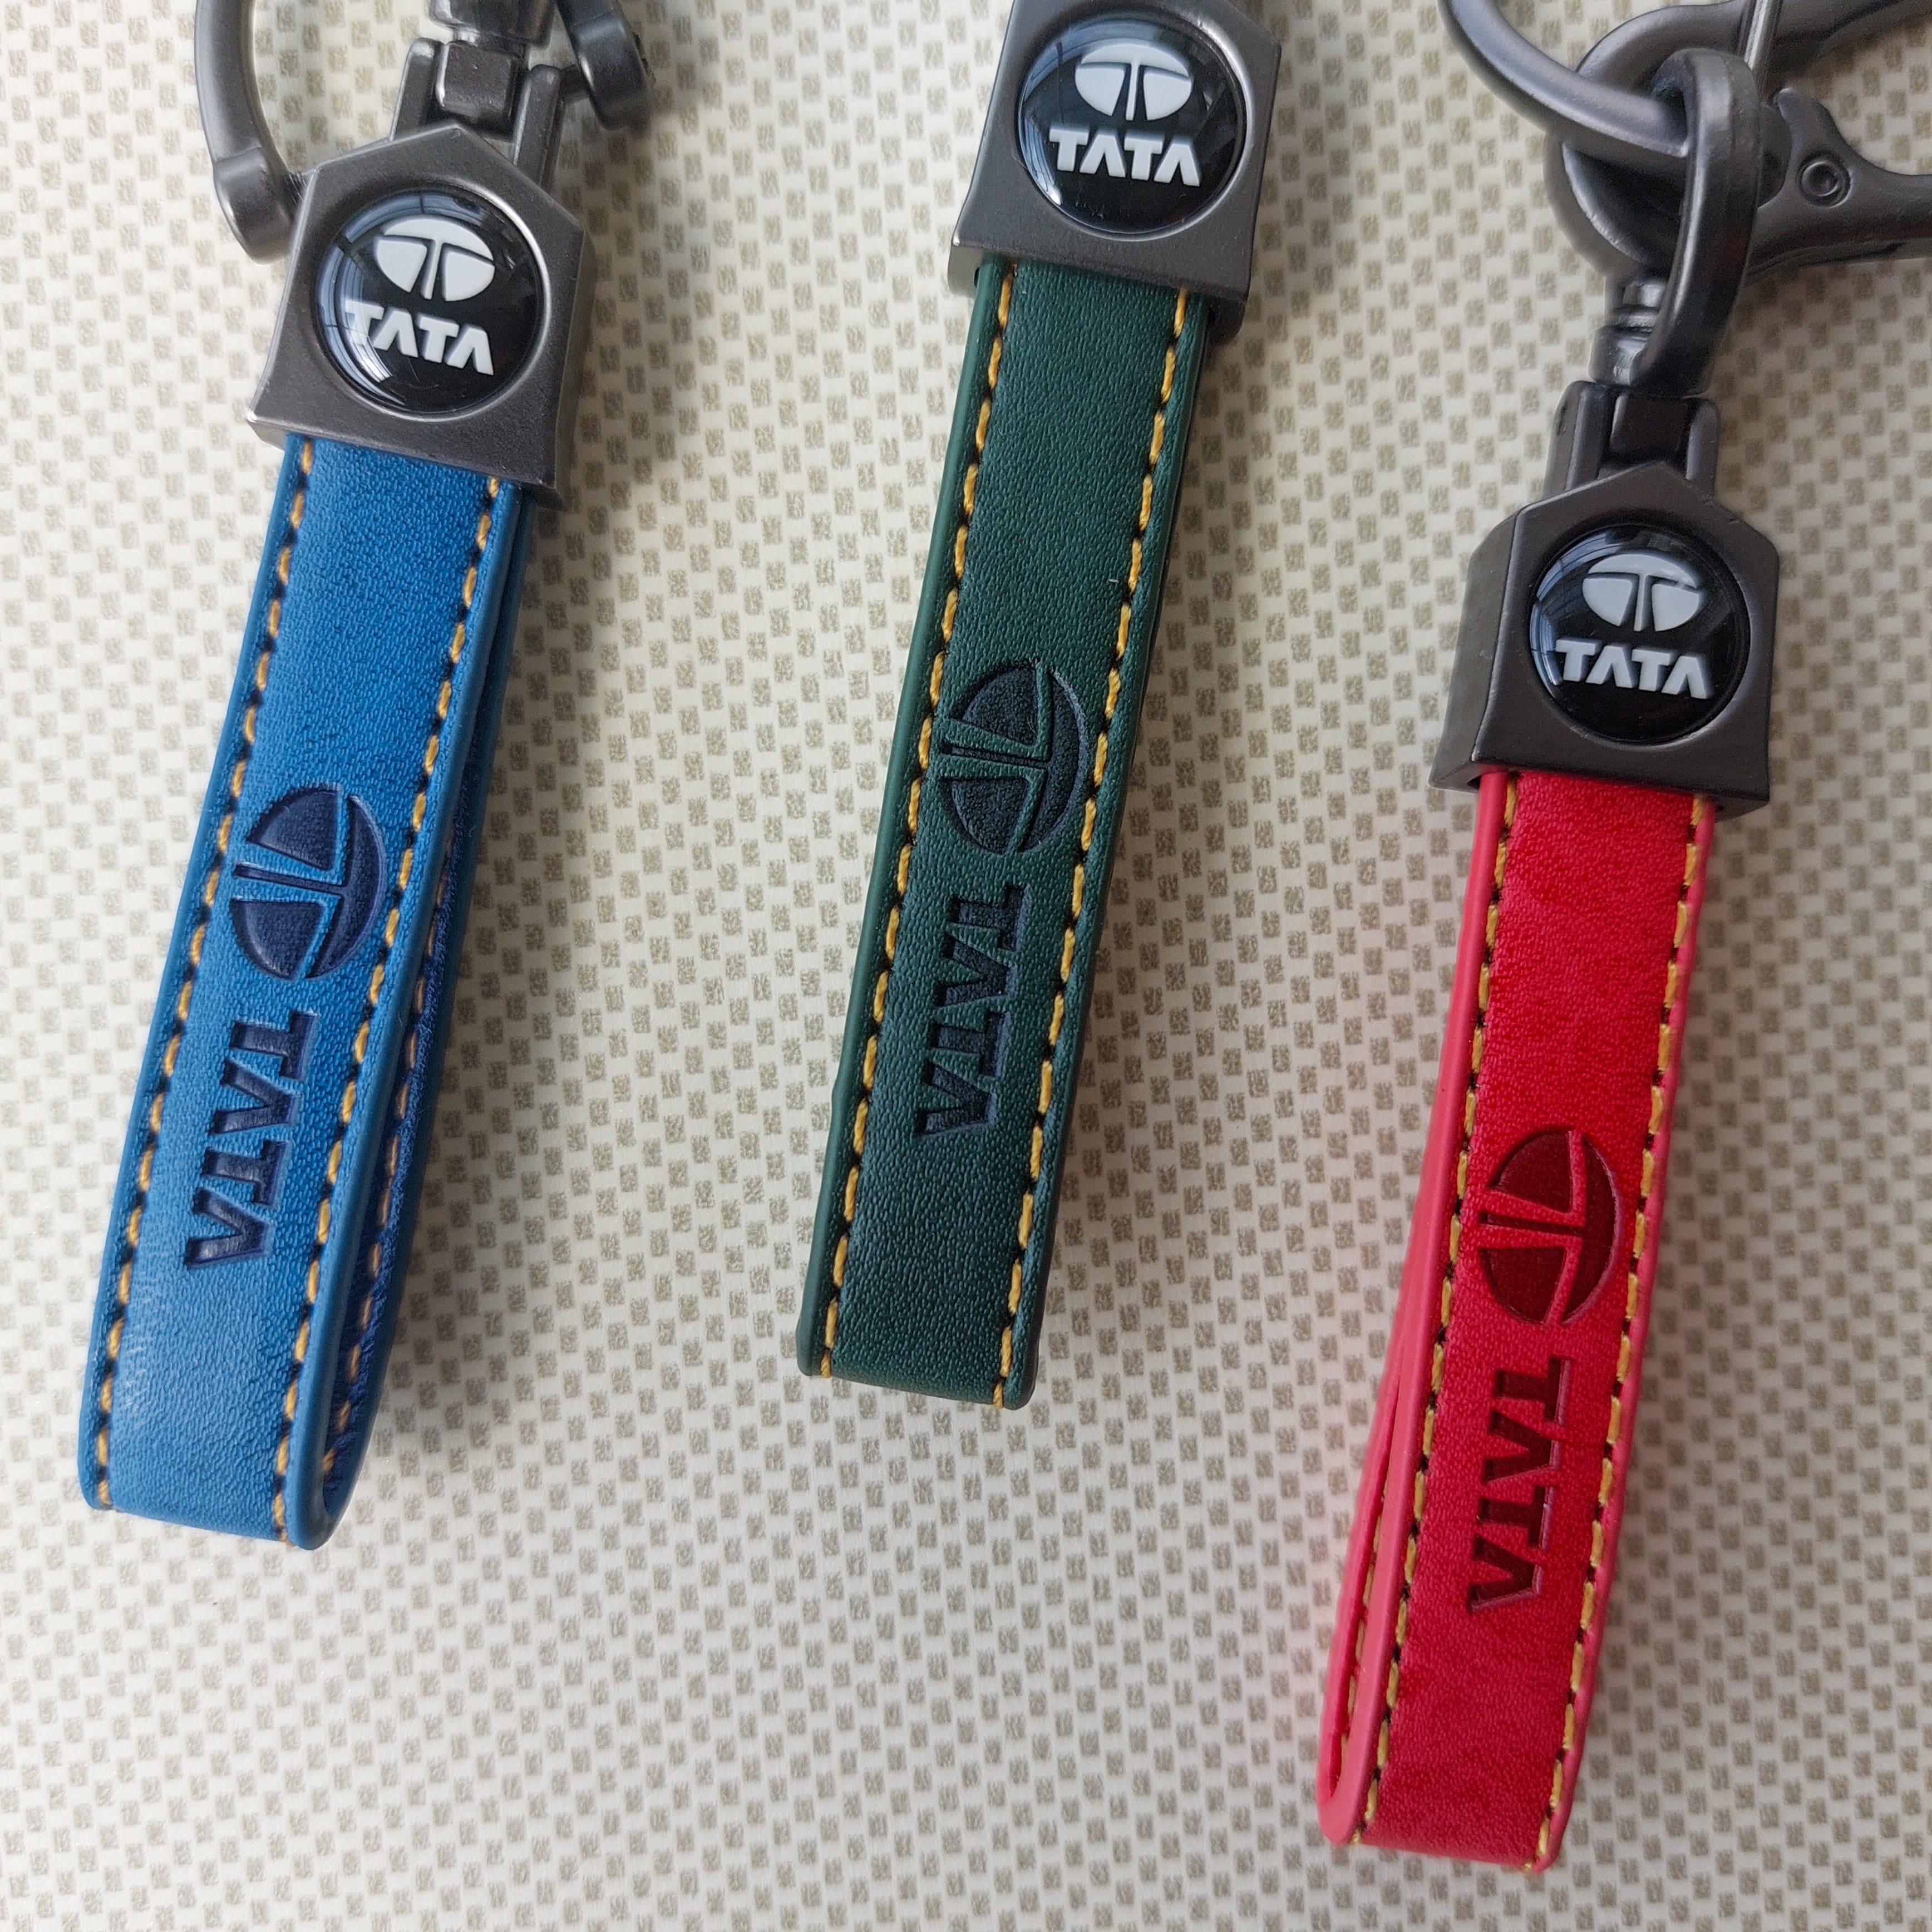 TATA Car Logo Leather Keychains